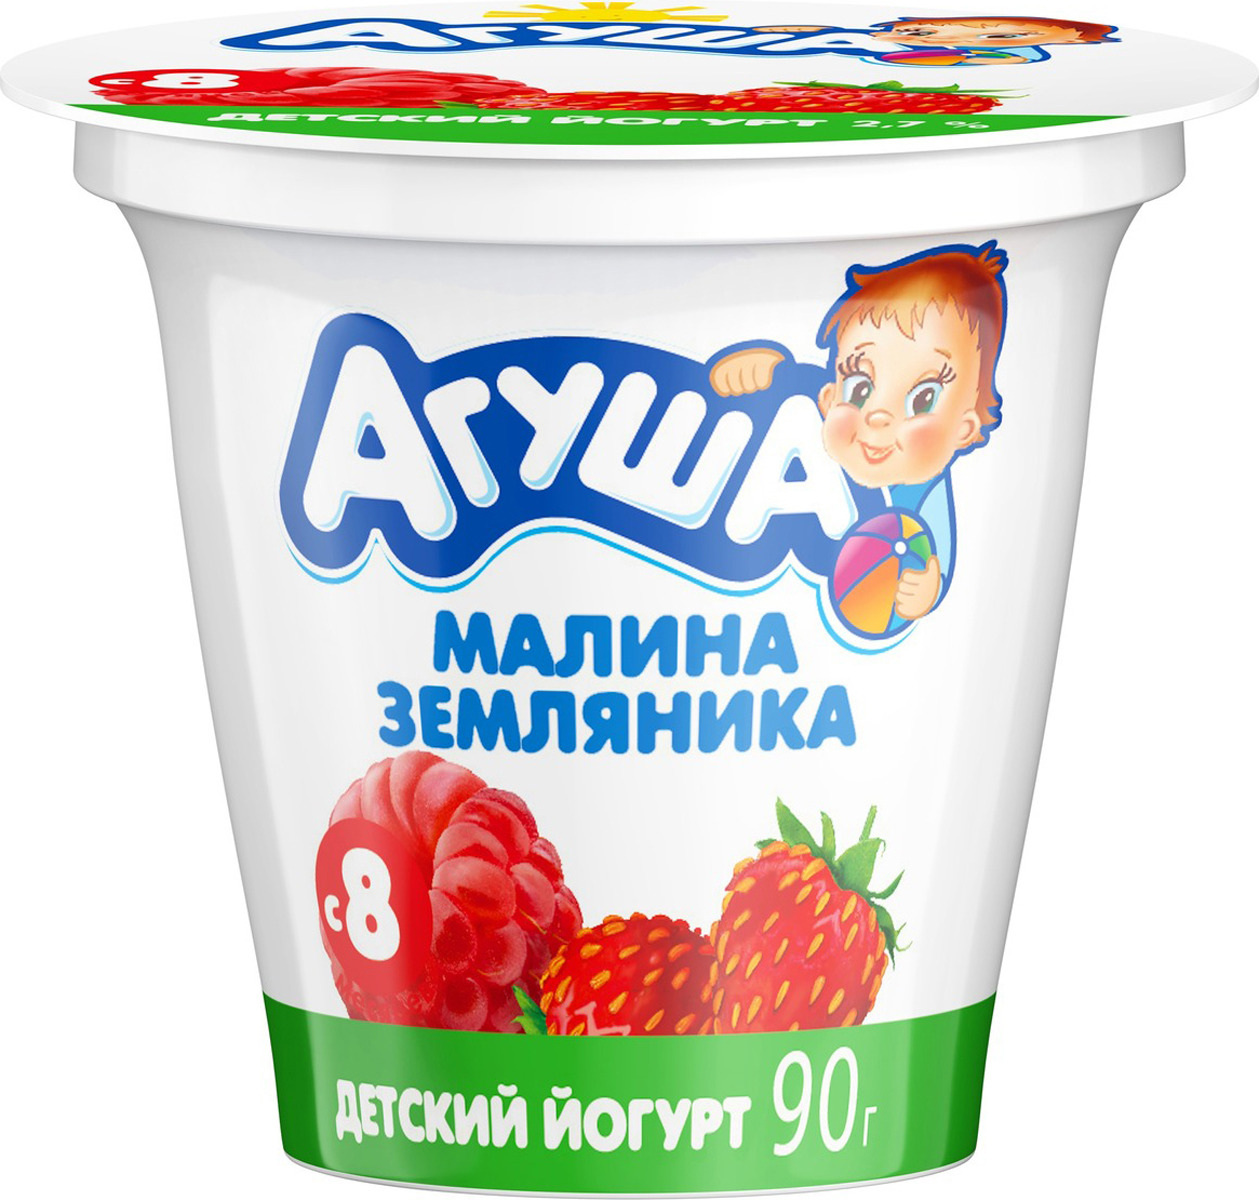 Картинка йогурт для детей на прозрачном фоне